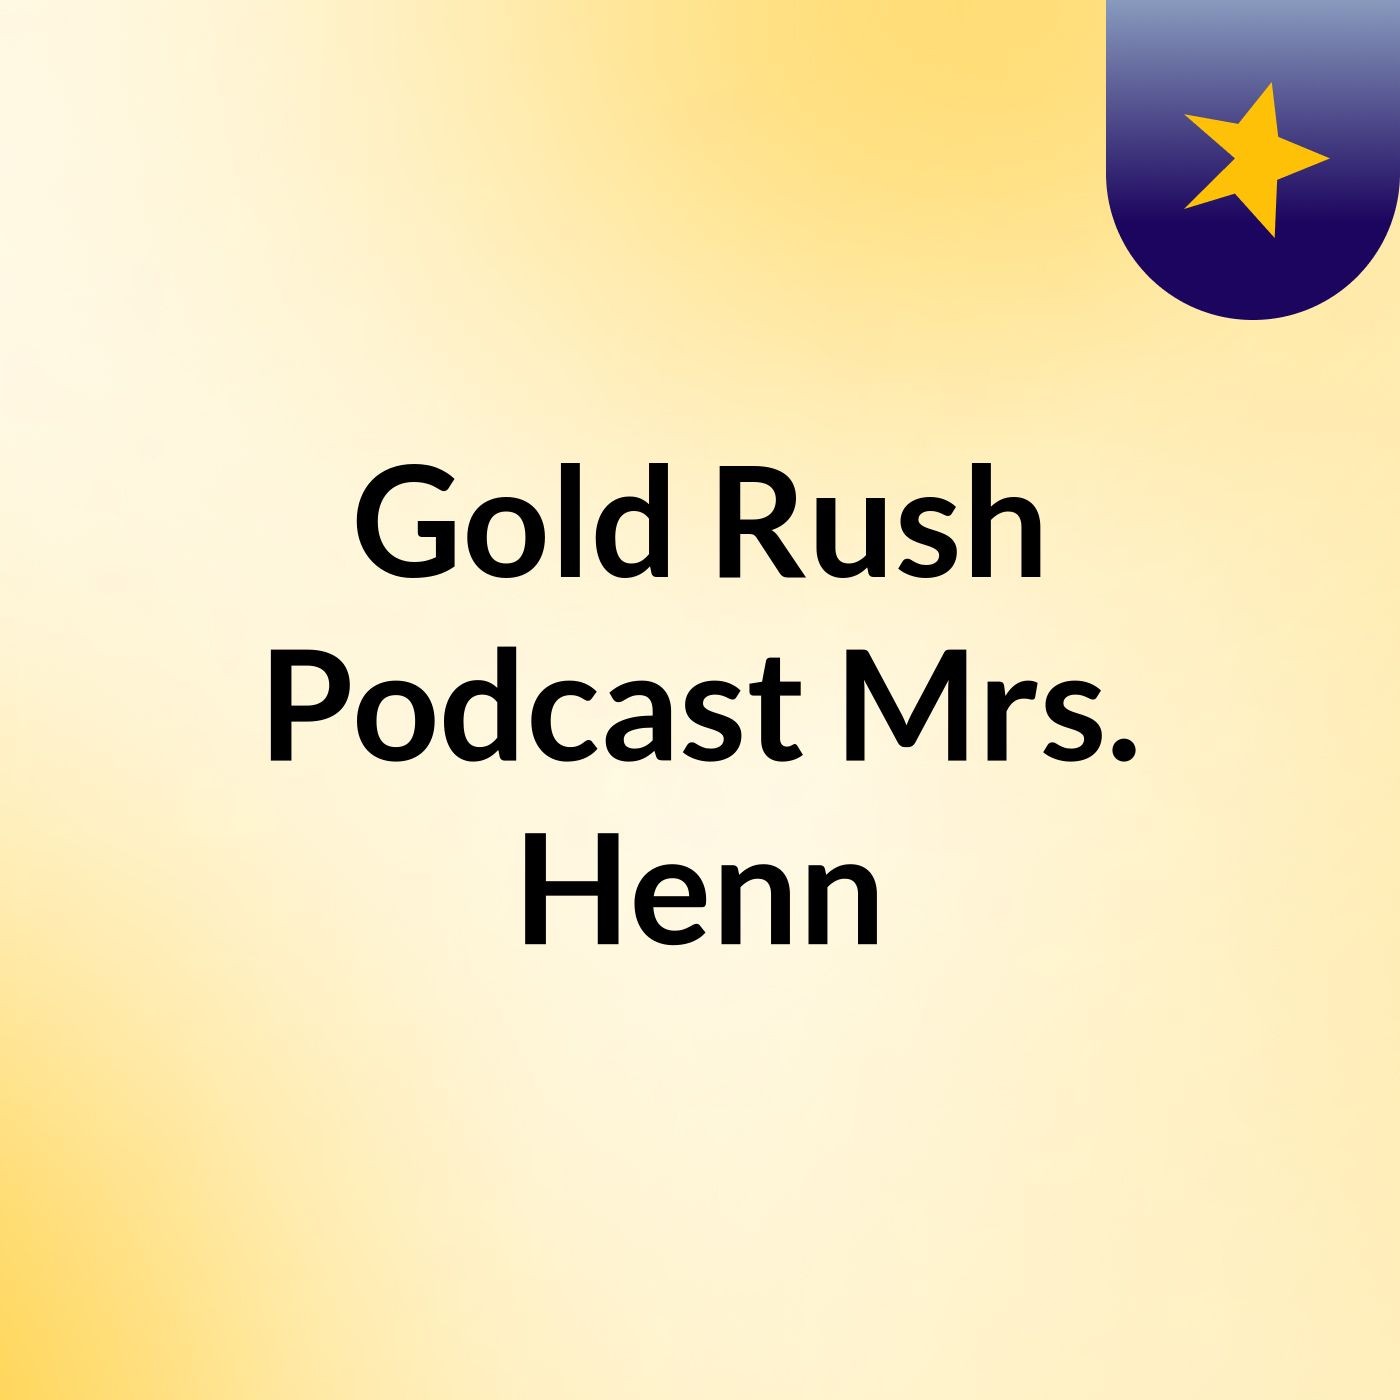 Gold Rush Podcast Mrs. Henn